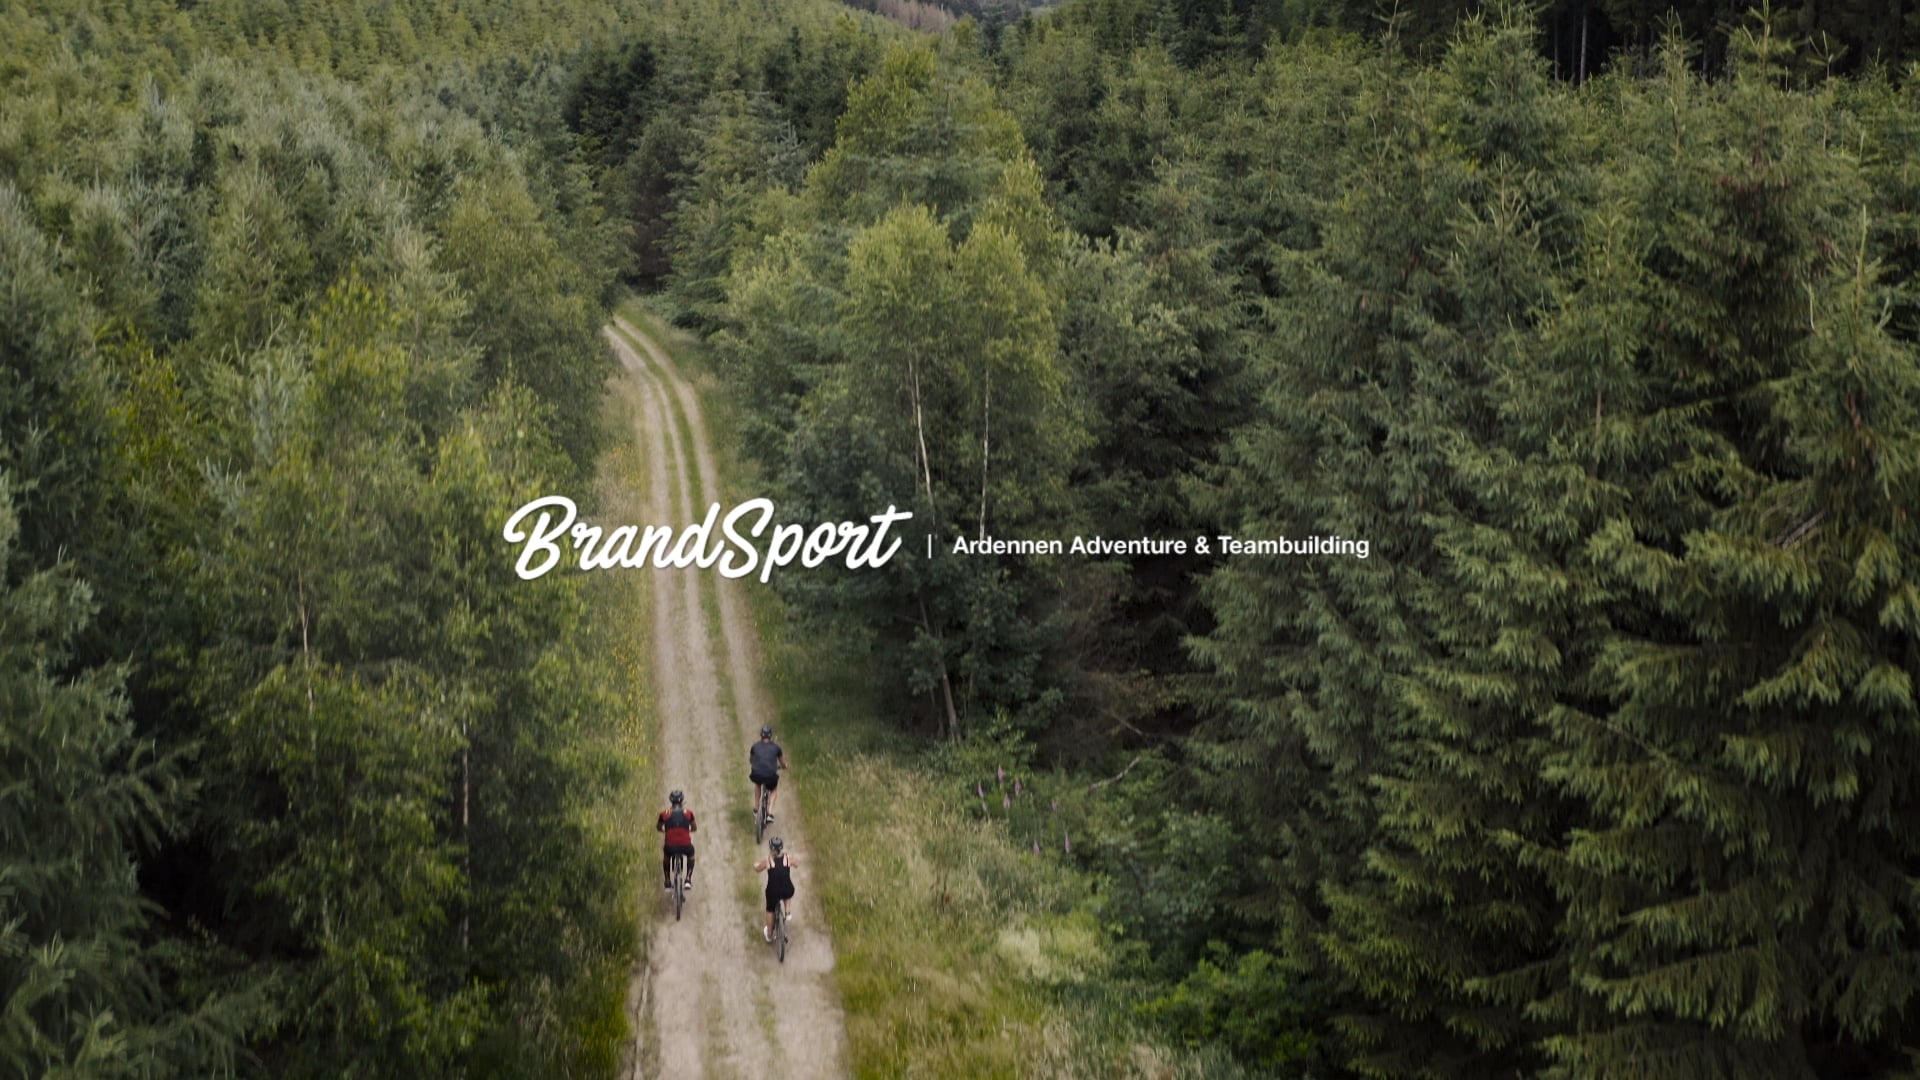 Ardennes Escape - Brandsport Corporate Video